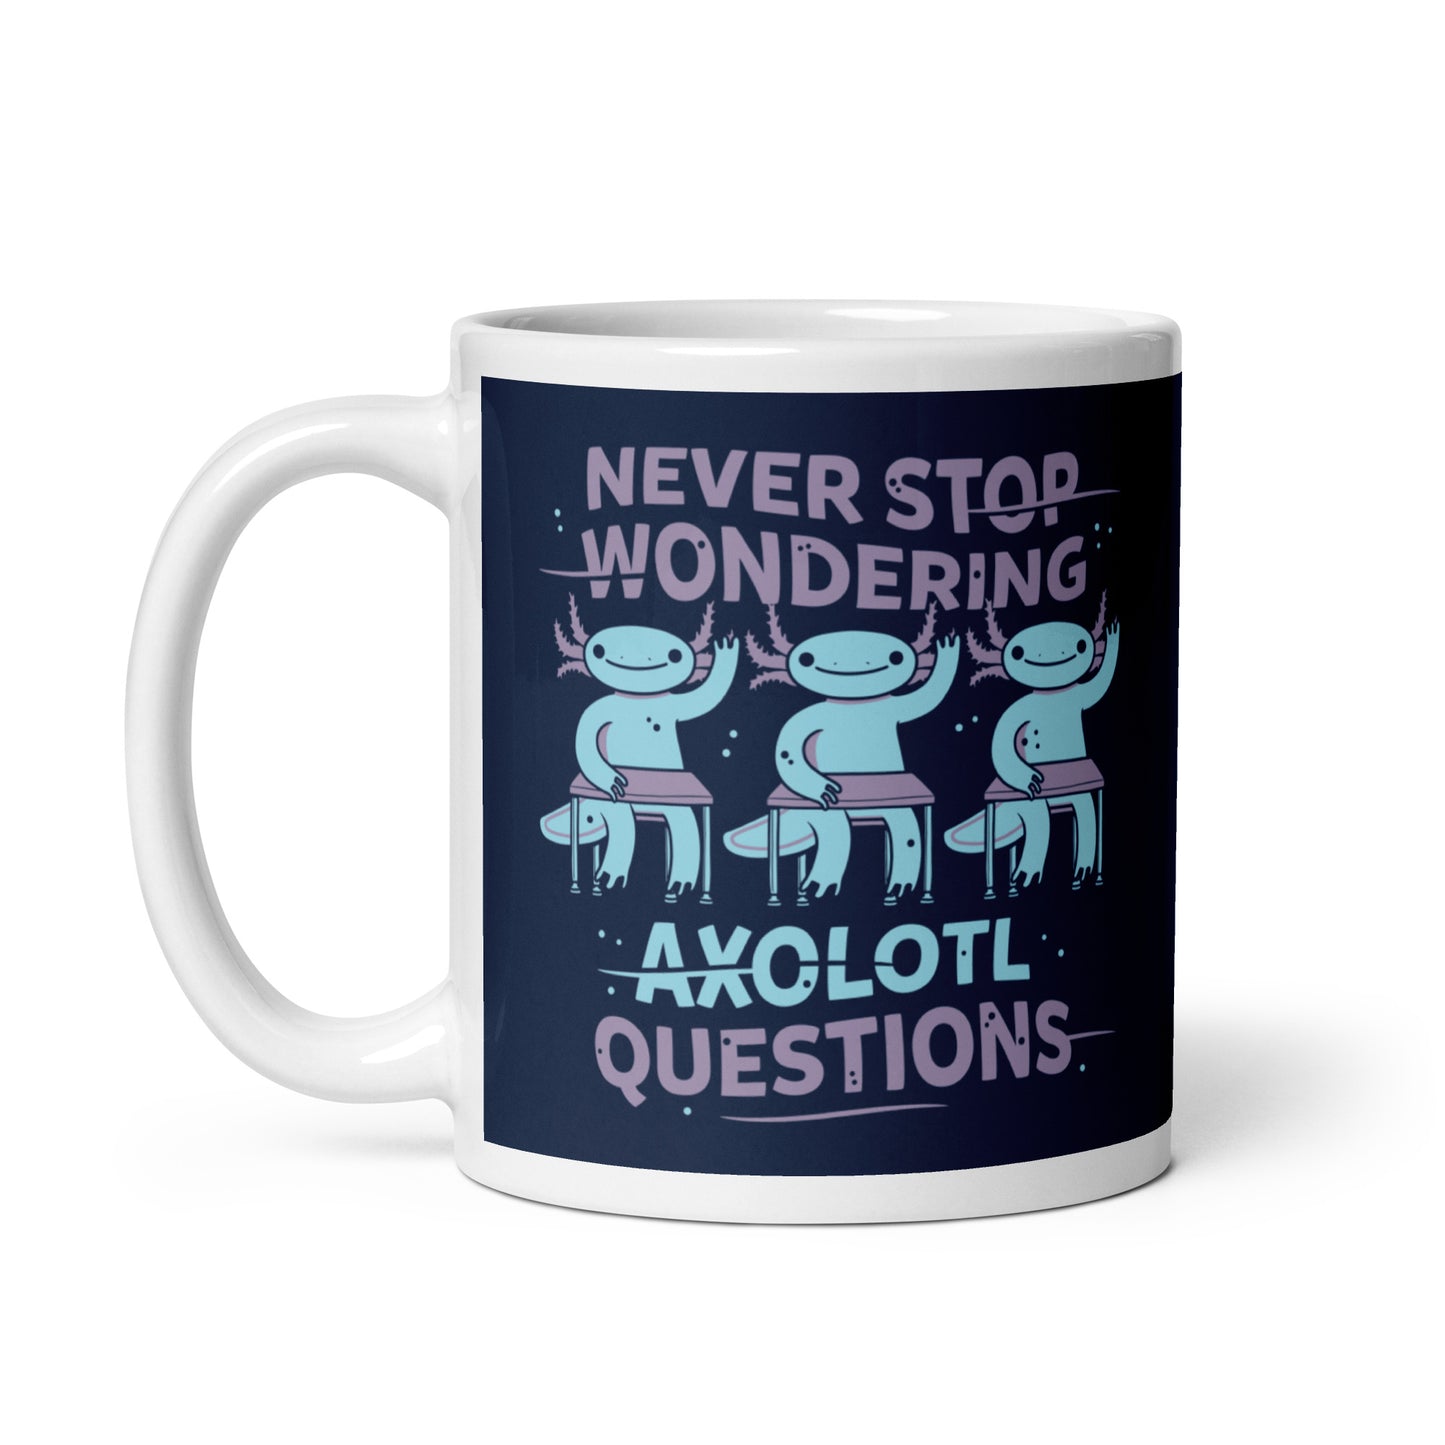 Axolotl Questions Mug